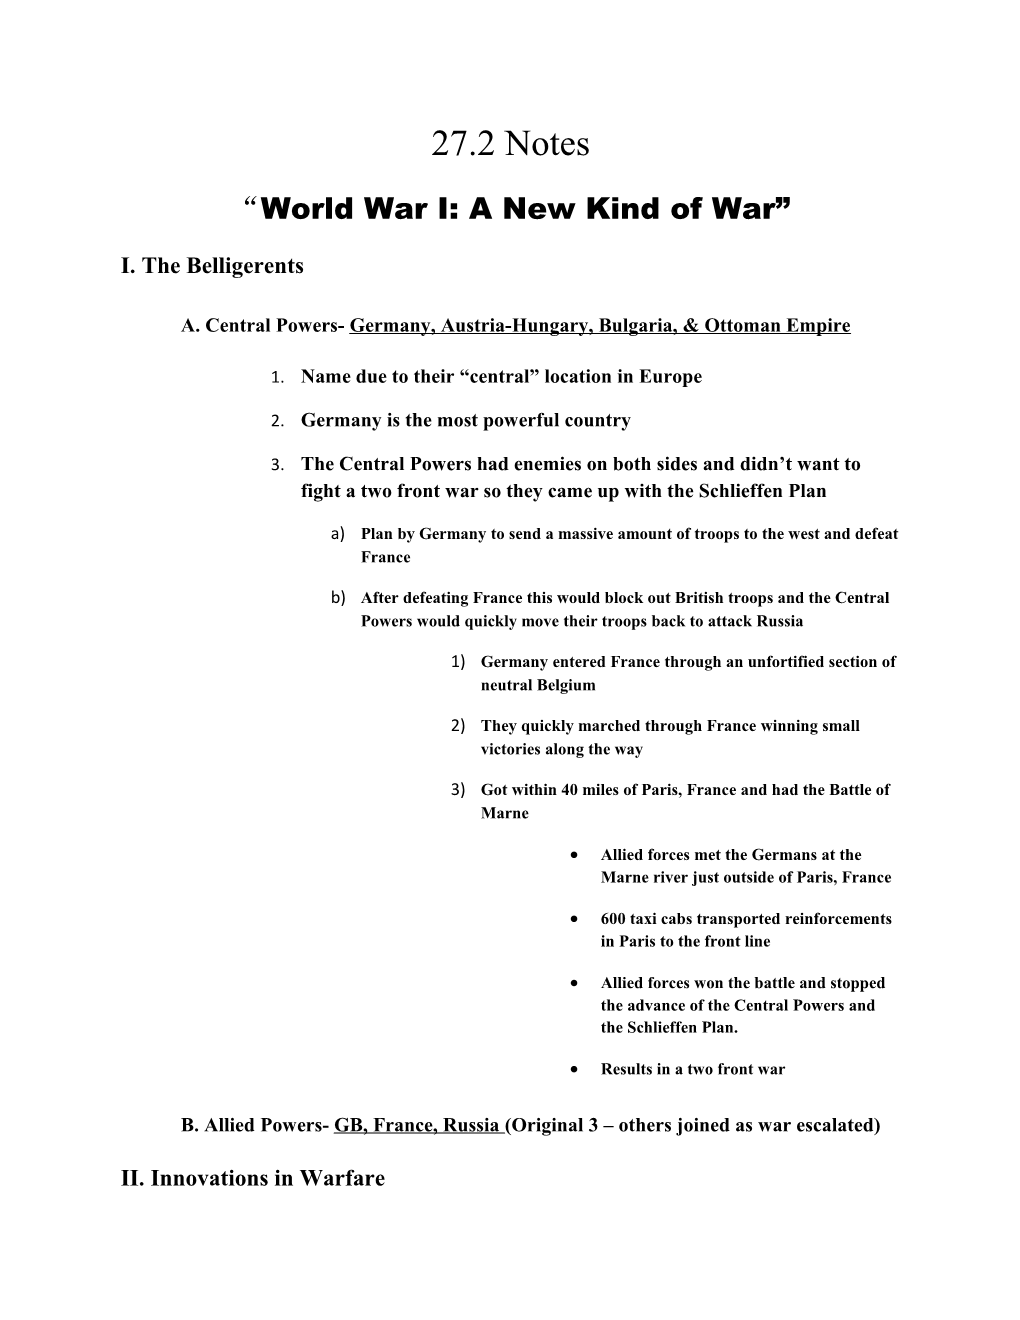 World War I: a New Kind of War